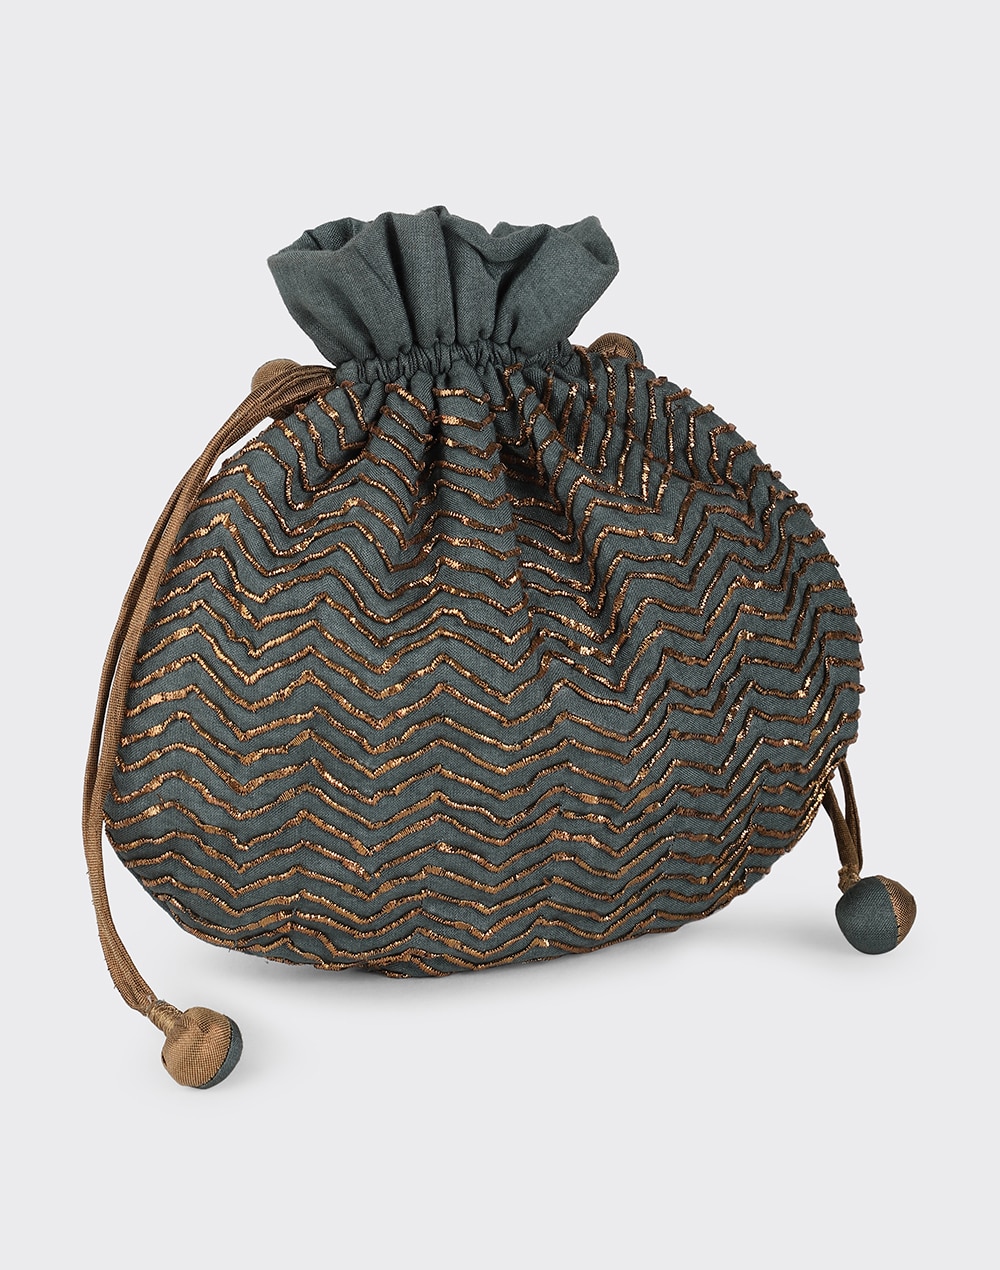 Fabric Embroidered Potli Bag